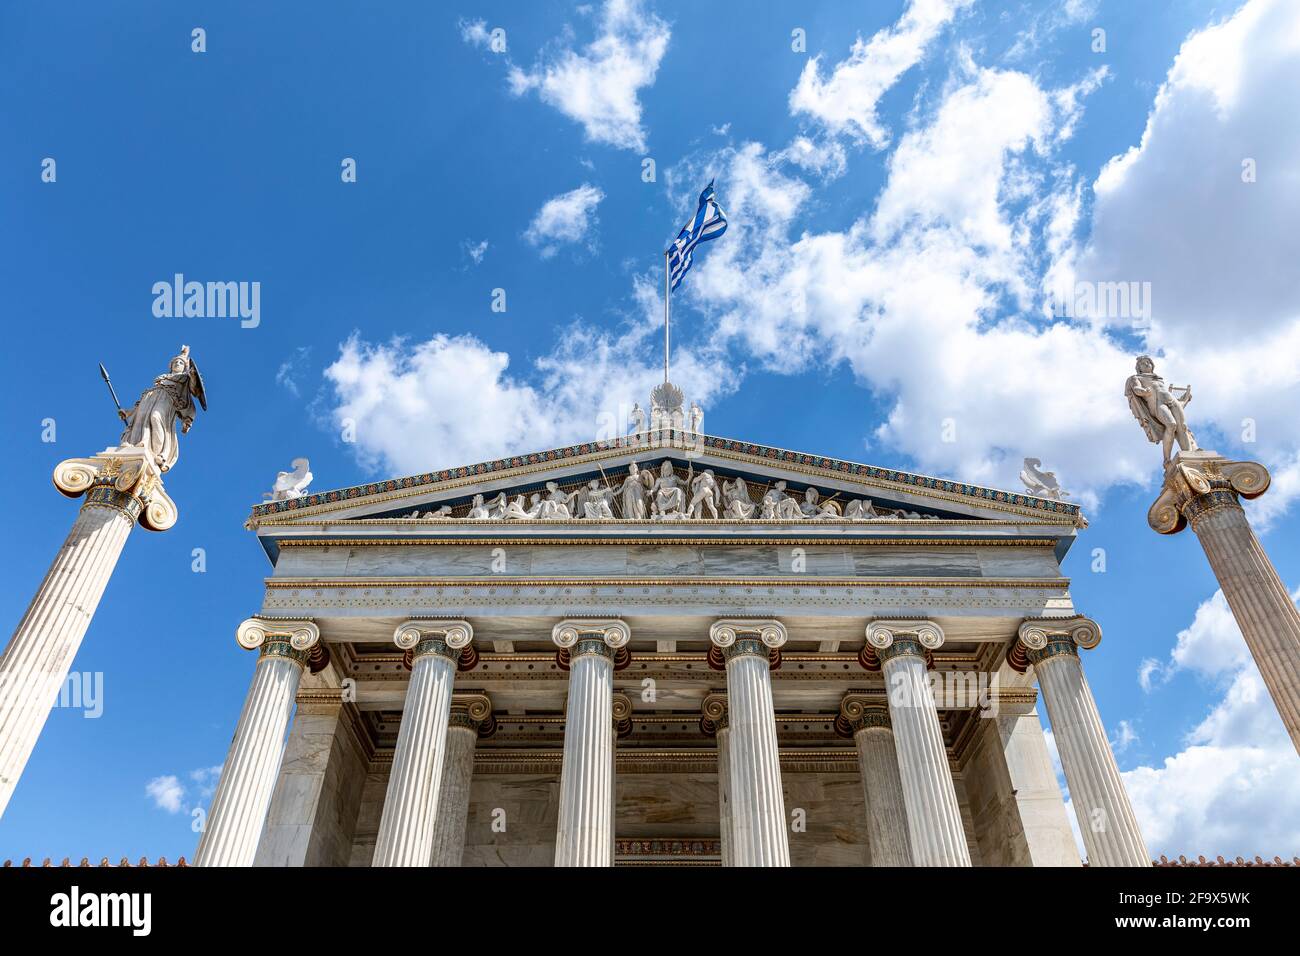 La Academia de Atenas con las estatuas de Atenea el defensor (L) y Apolo el guitarrista (R). Ambos en pilares del ritmo Jónico. Foto de stock